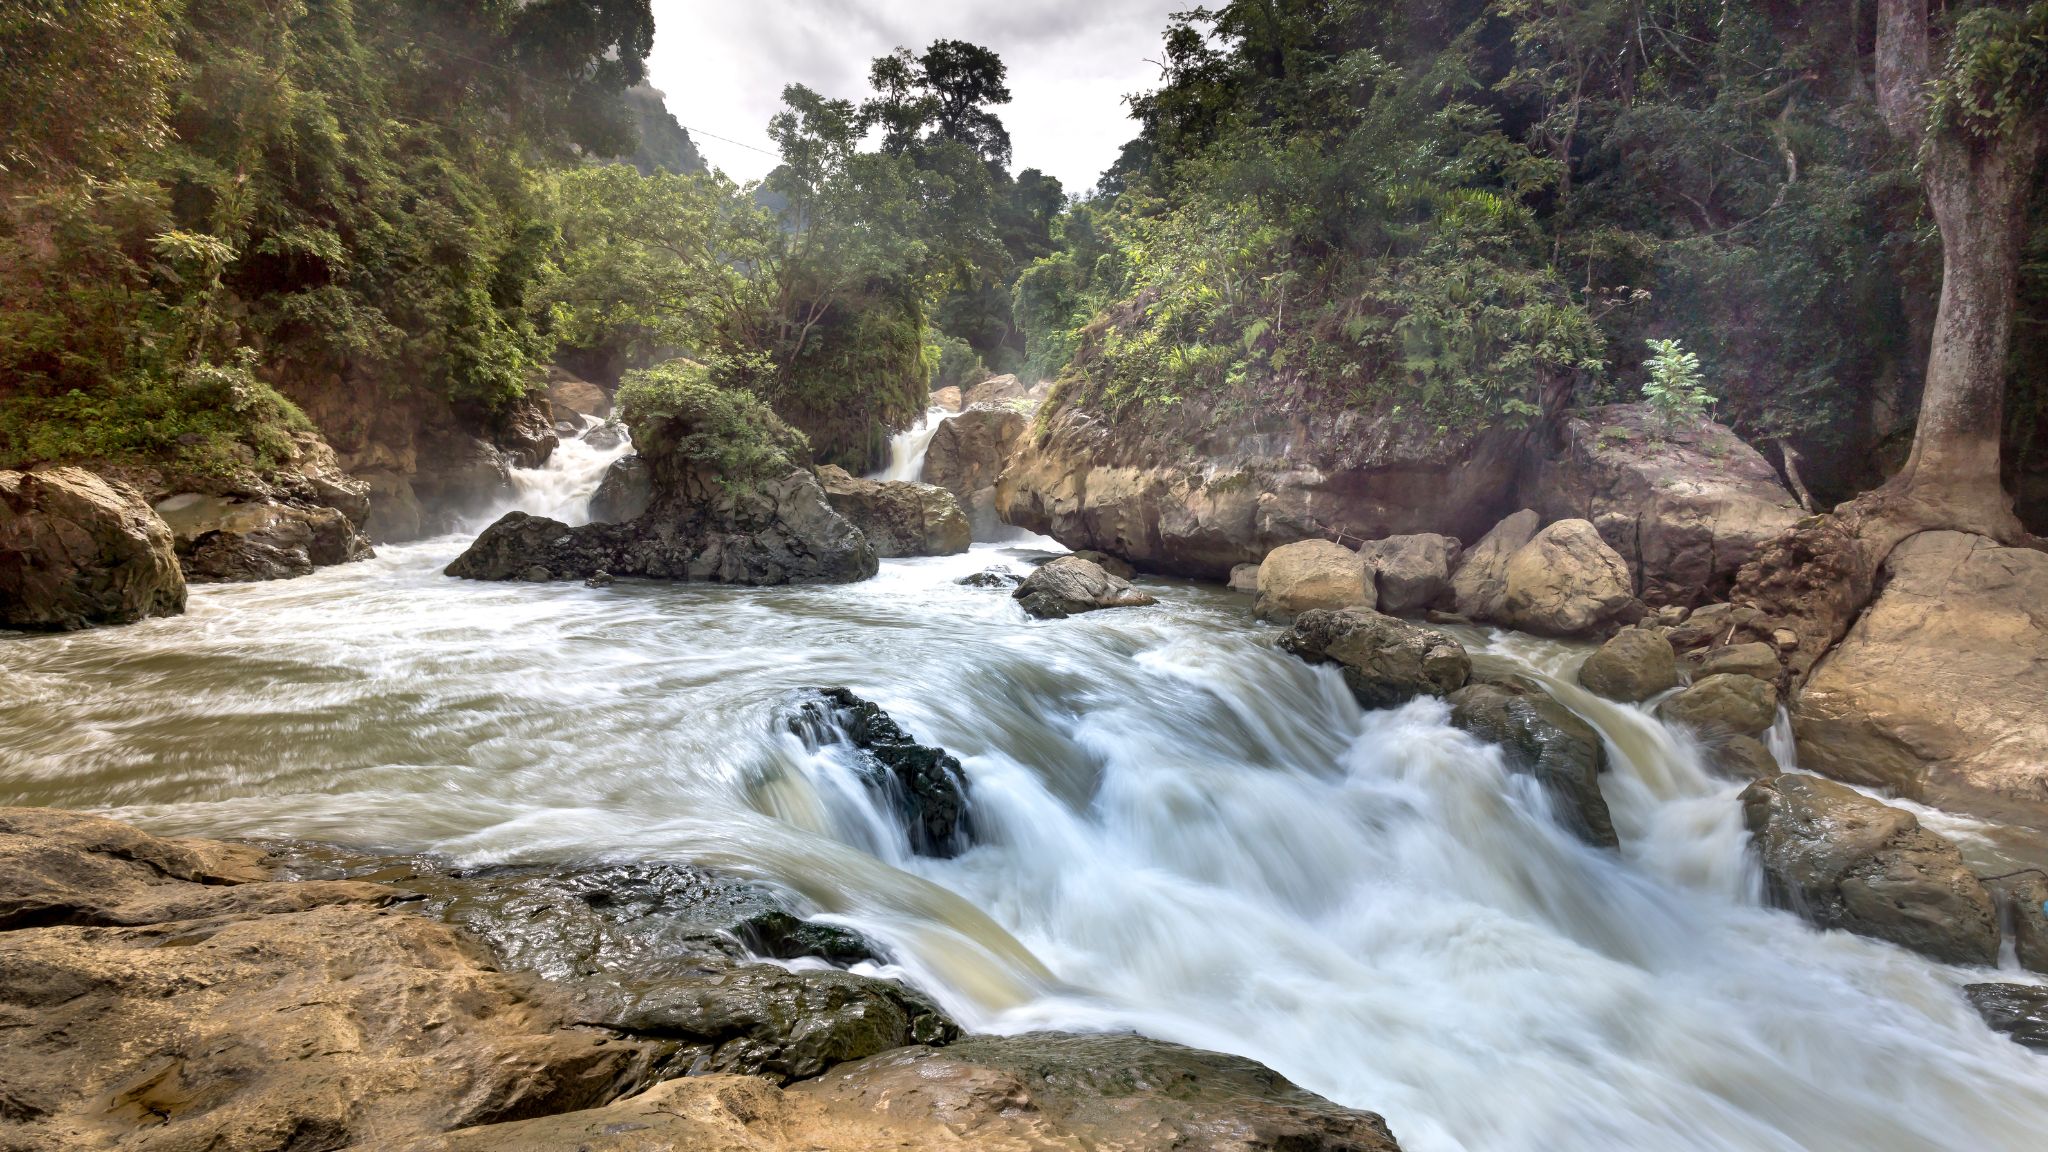 Day 2 Visit The Beautiful Dau Dang Waterfall